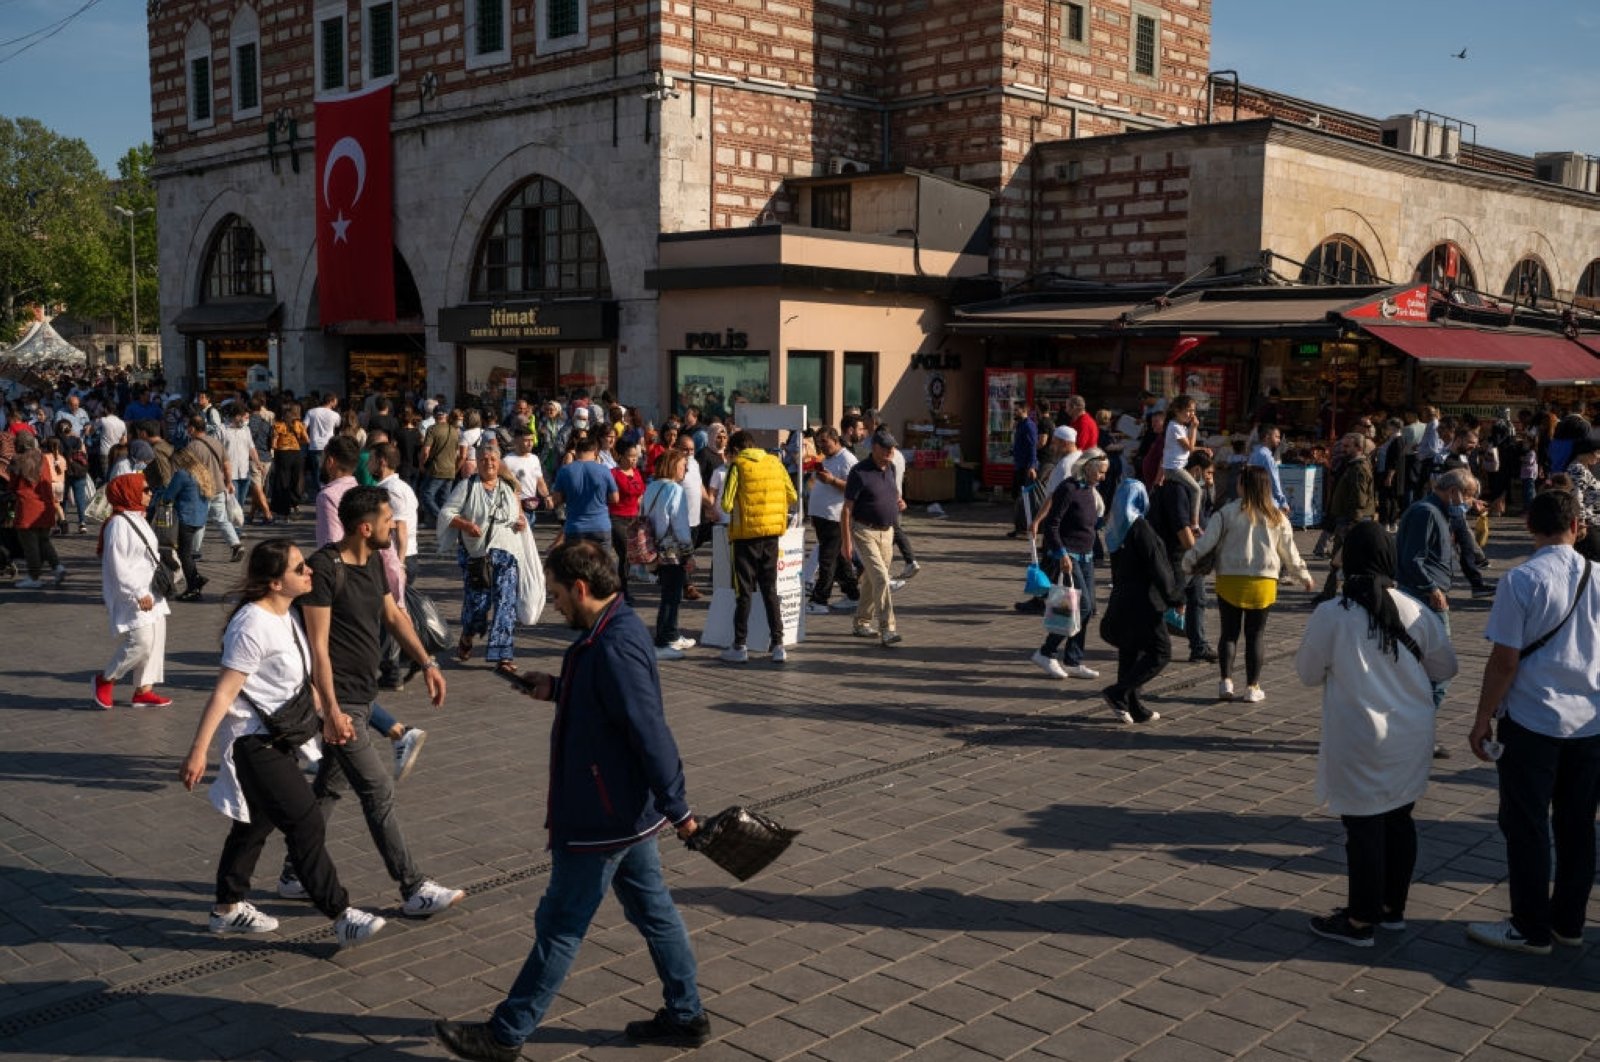 Kasus COVID-19 meningkat lagi di Turki tetapi tidak pada tingkat yang mengkhawatirkan